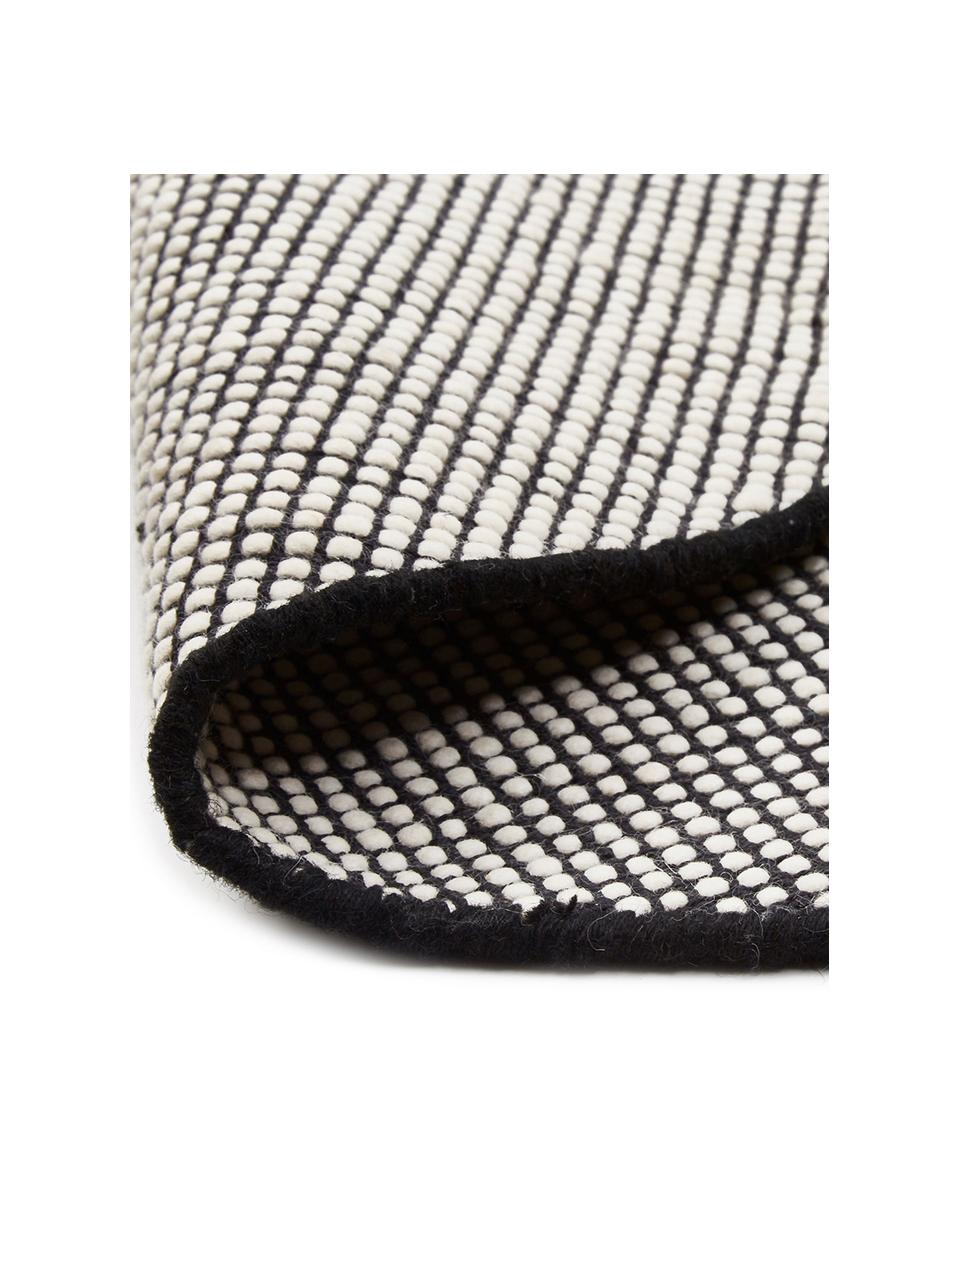 Tapis rond en laine noir tissé main Amaro, Noir, blanc crème, Ø 140 cm (taille M)